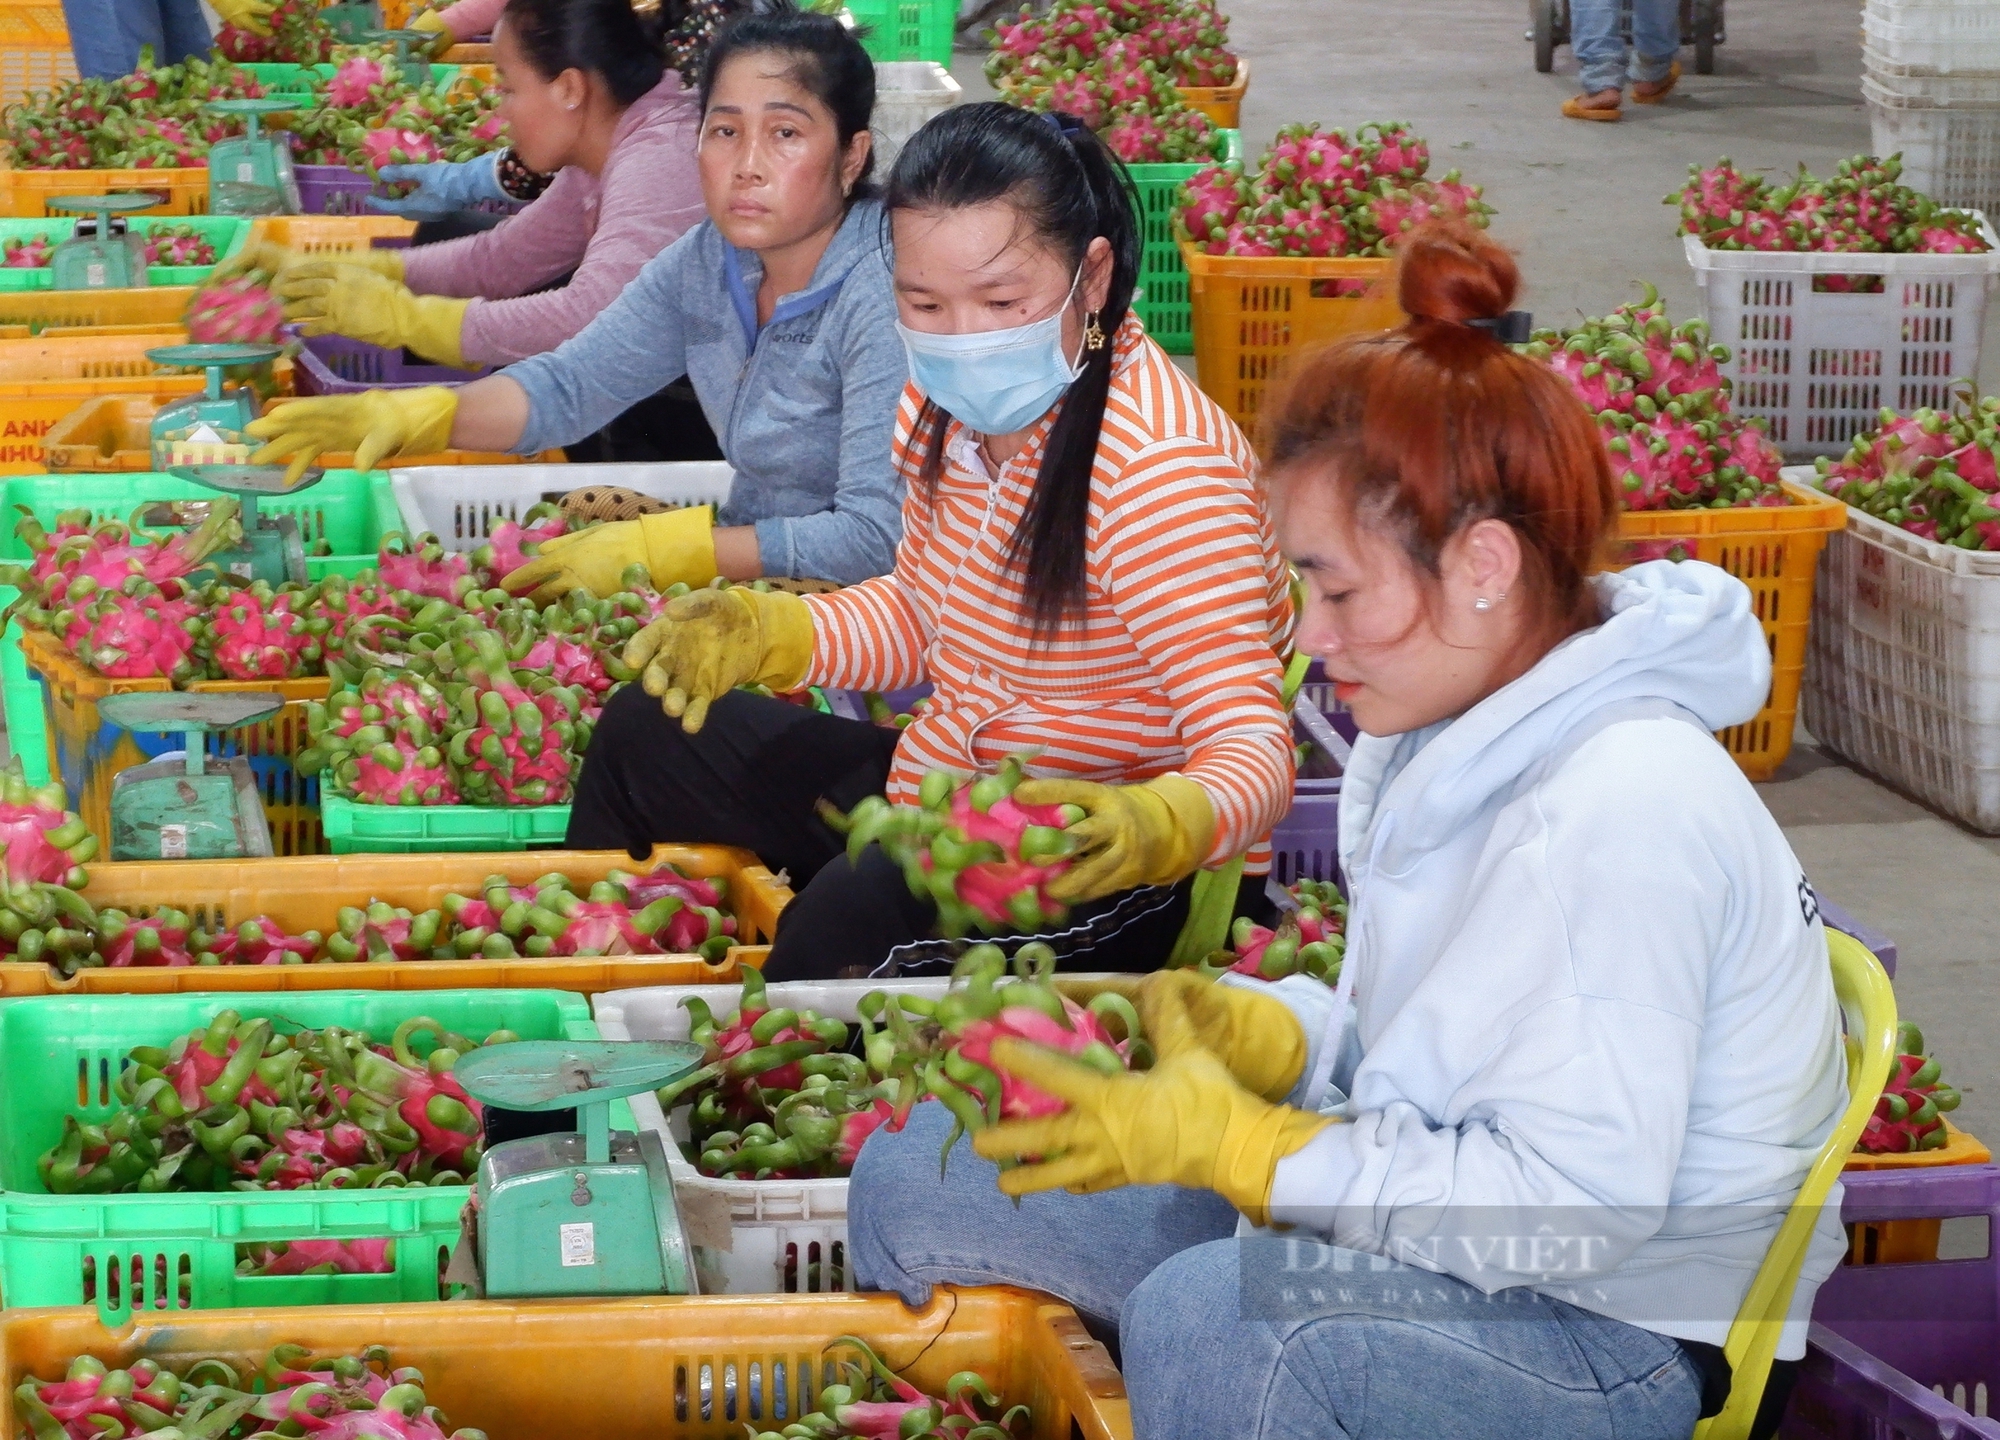 Bình Thuận phấn đấu có 10.500 ha thanh long đạt tiêu chuẩn VietGAP để xuất khẩu - Ảnh 1.